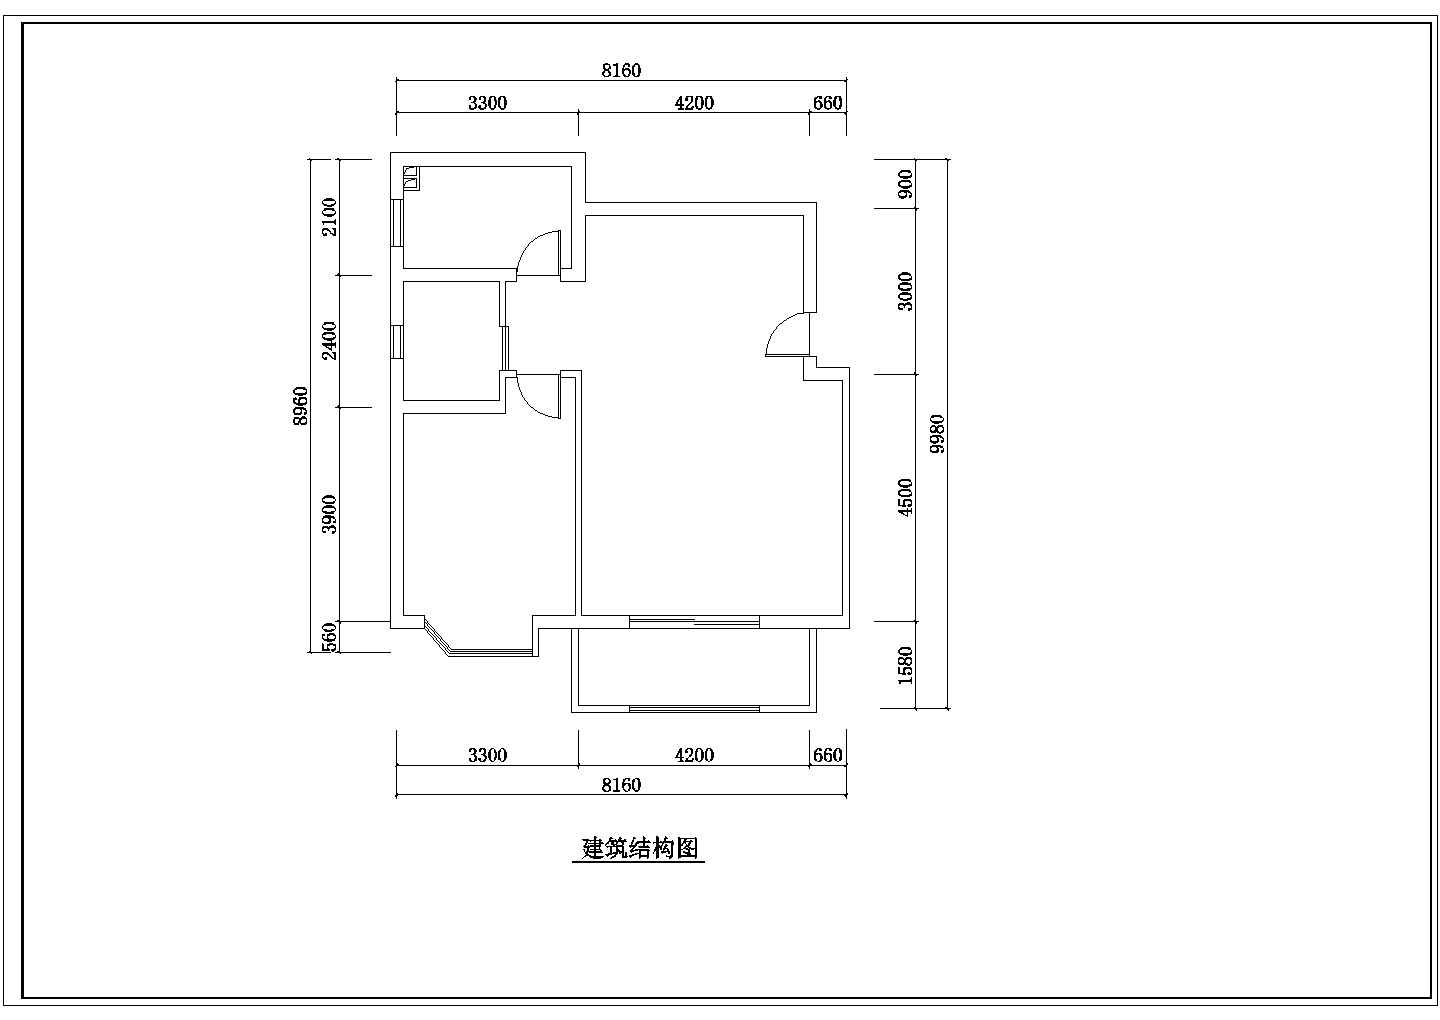 苏州某小区小户型公寓楼全套装修设计方案图纸